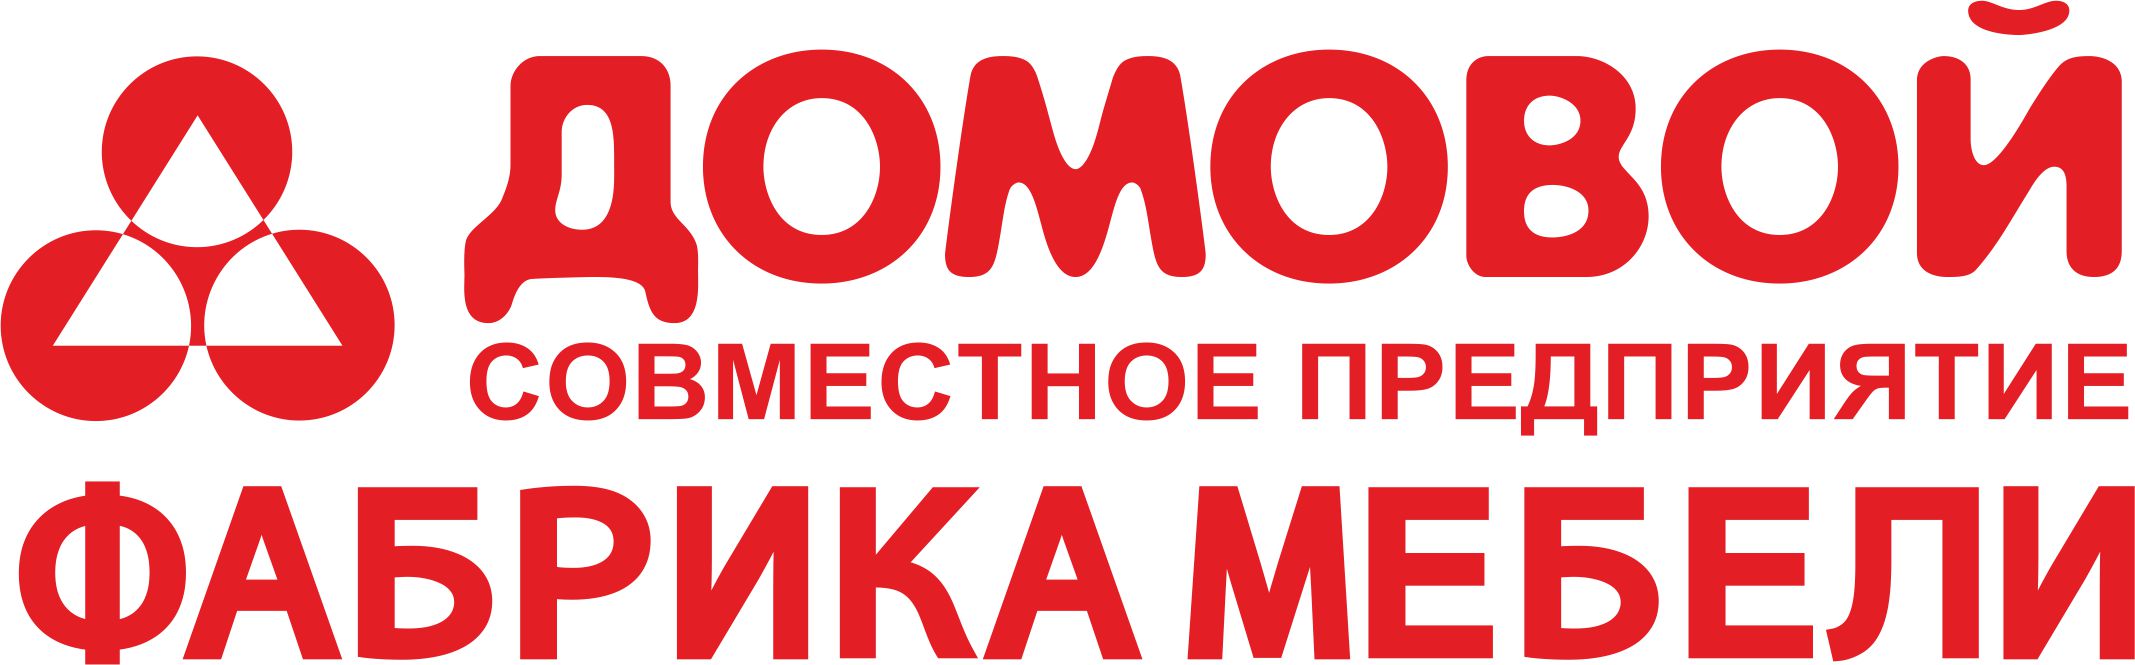 Логотип ФАБРИКА МЕБЕЛИ.jpg